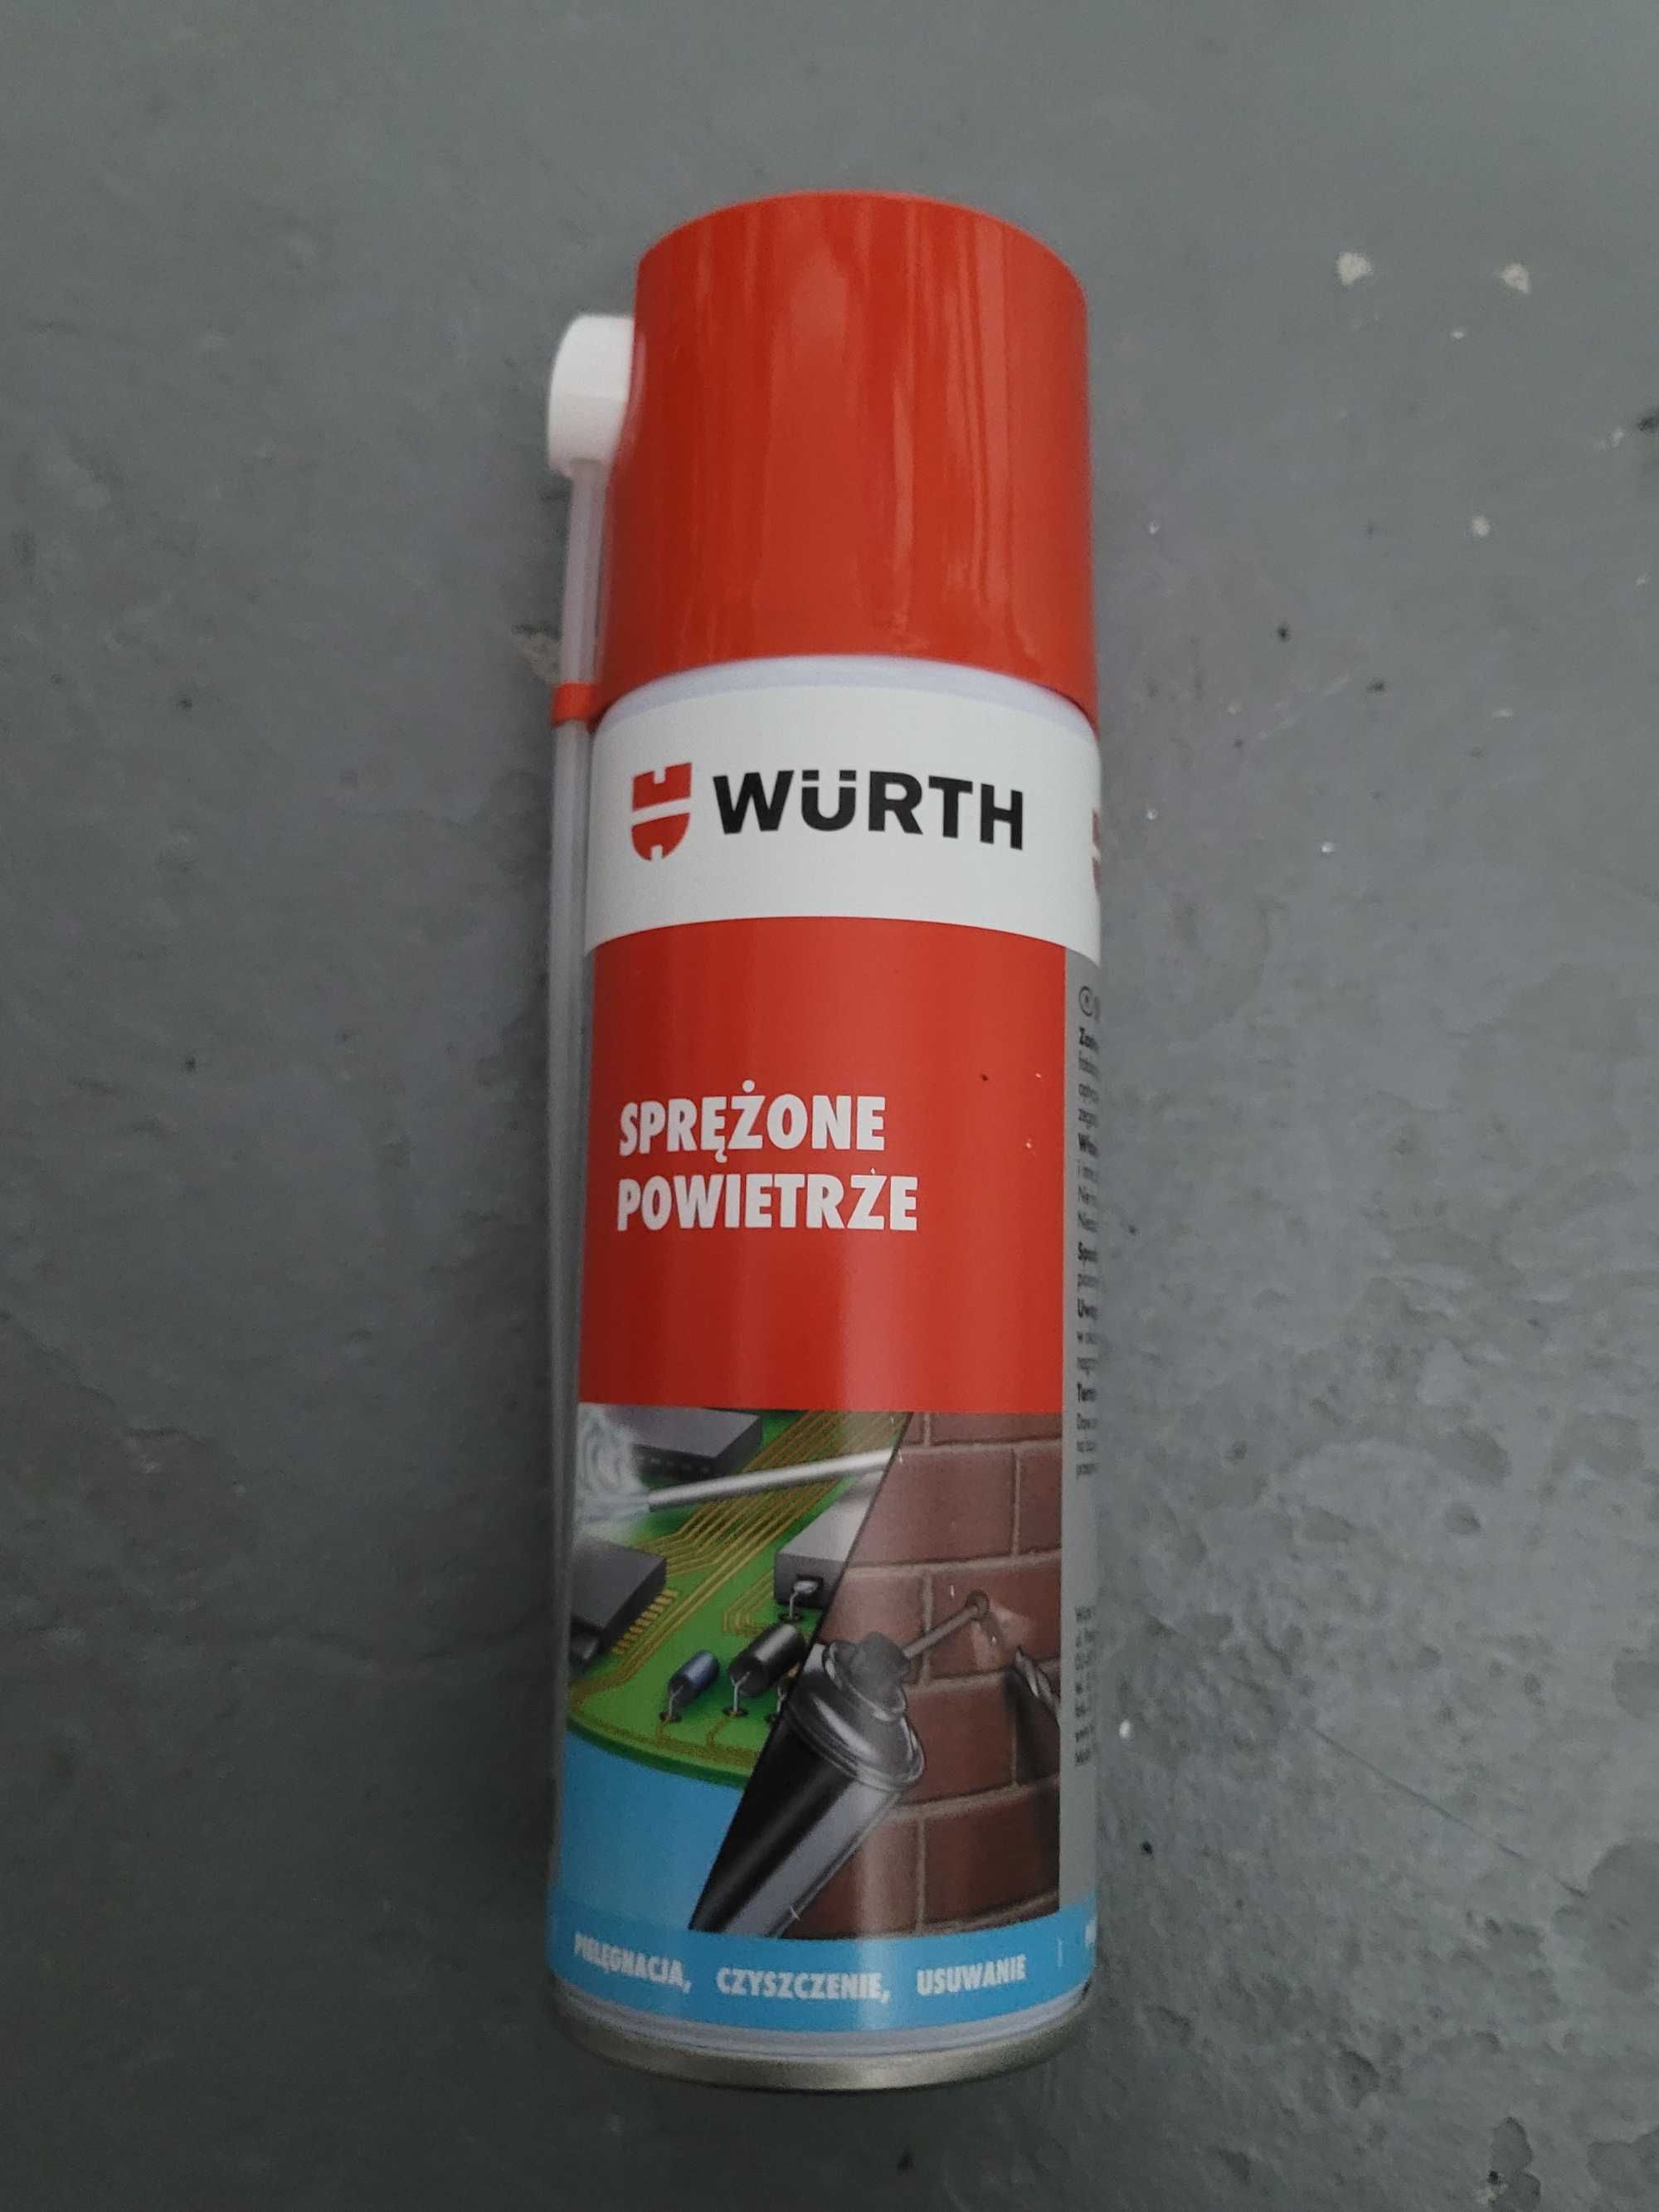 Sprężone powietrze Wurth spray